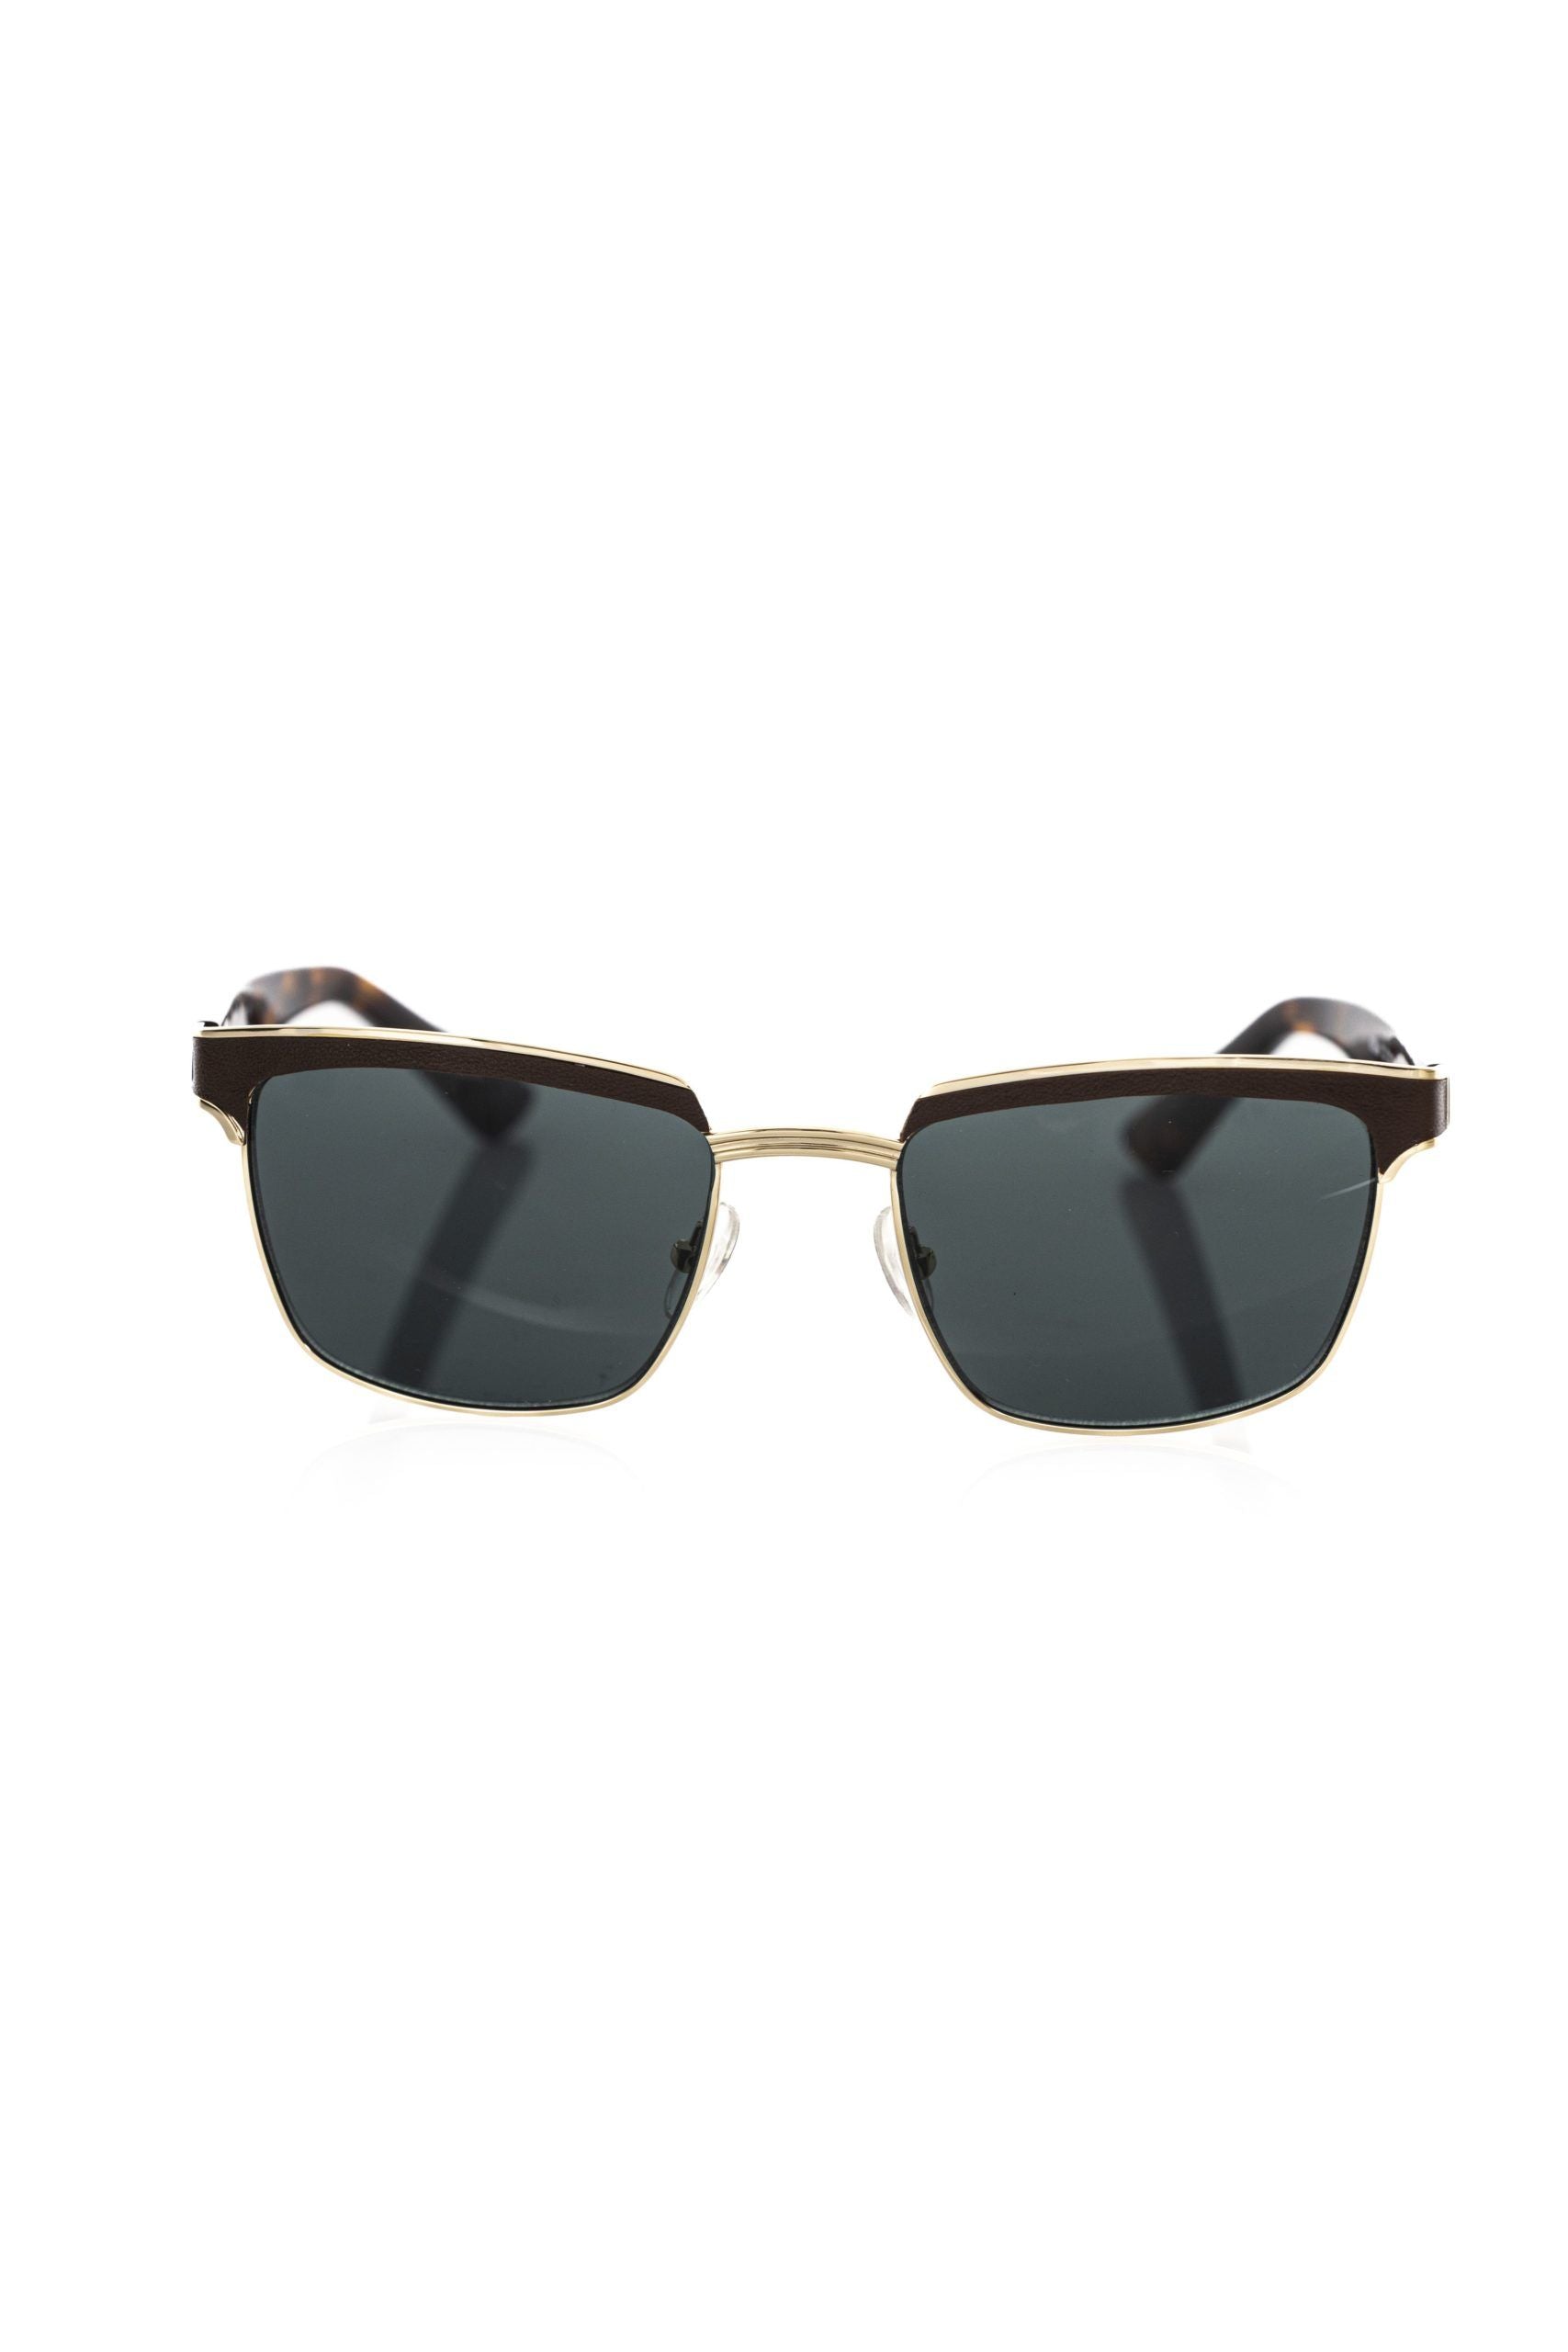 Frankie Morello – Elegante Clubmaster-Sonnenbrille mit getönten Gläsern